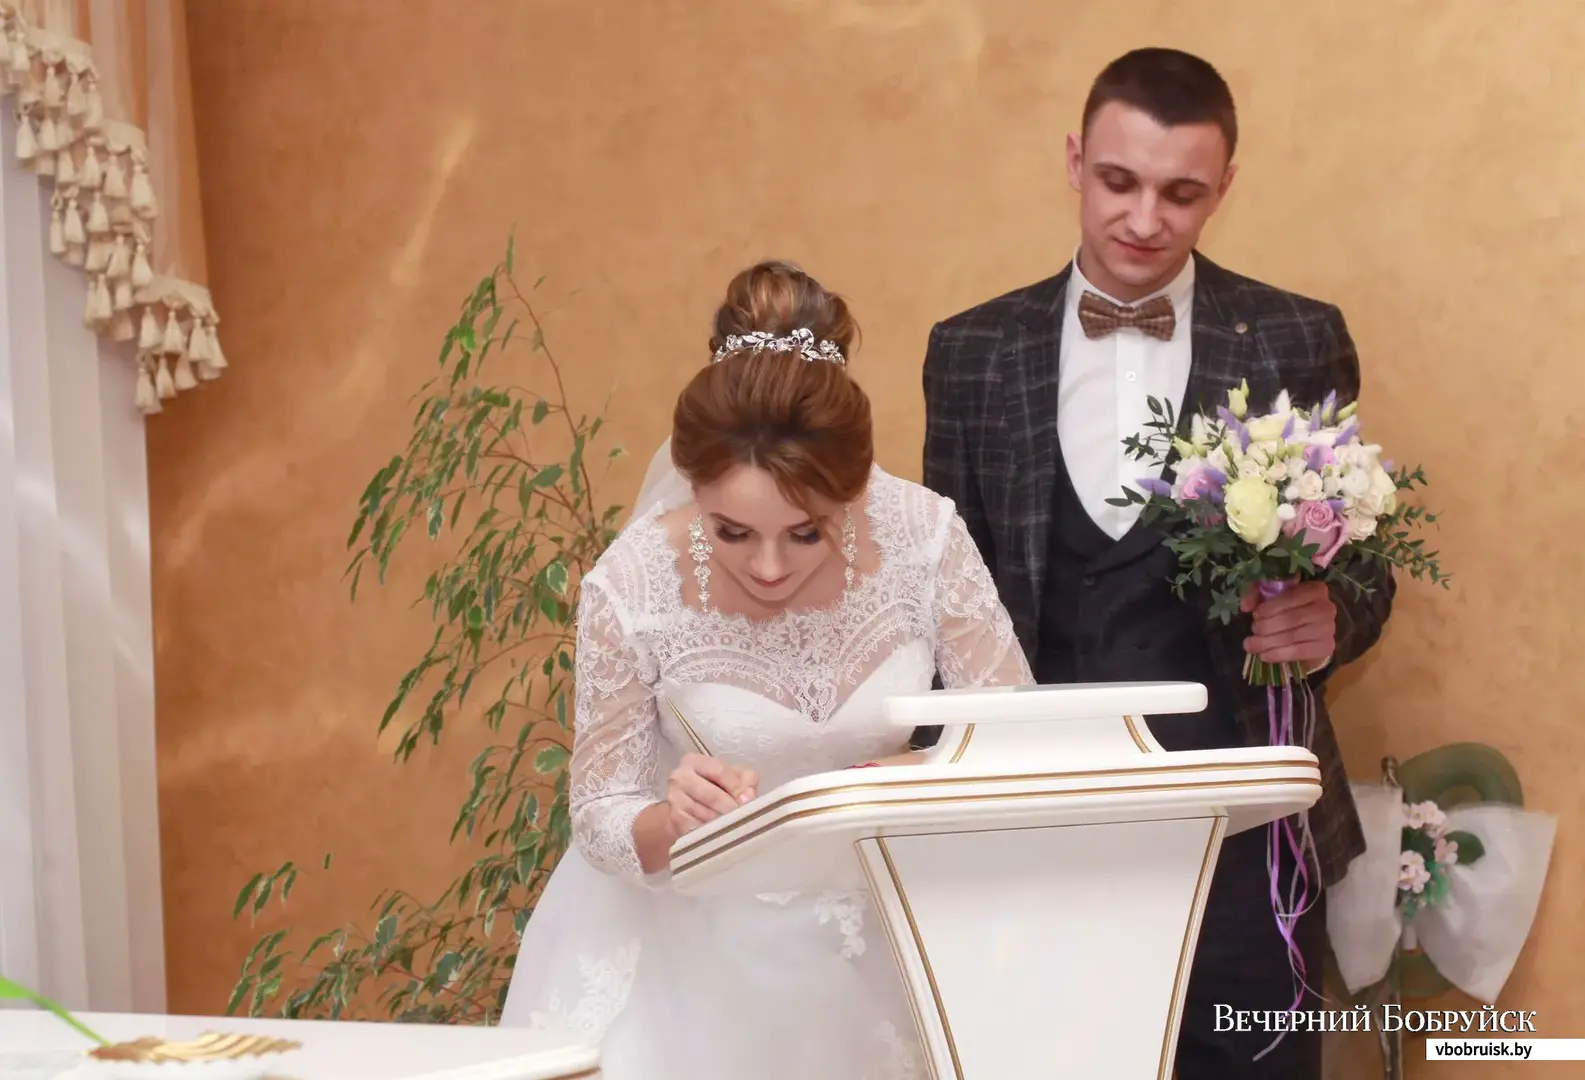 В субботу 1 февраля  узаконили свои отношения бобруйчане Павел и Ксения Зыковы.